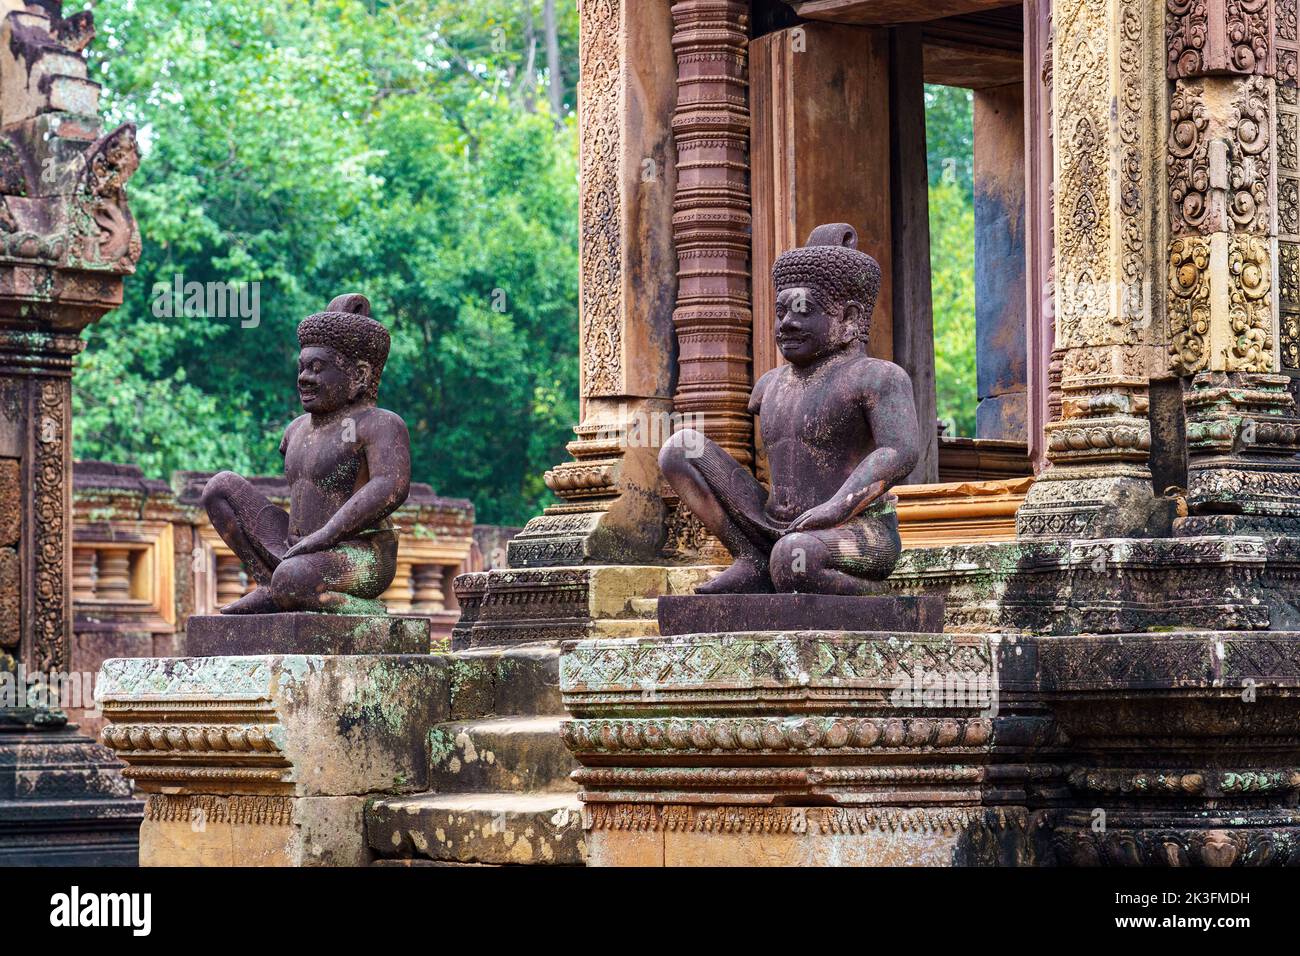 Cambodge. Province de Siem Reap. Le parc archéologique d'Angkor. Banteay Srei. Temple hindou de 10th siècles dédié à Shiva Banque D'Images